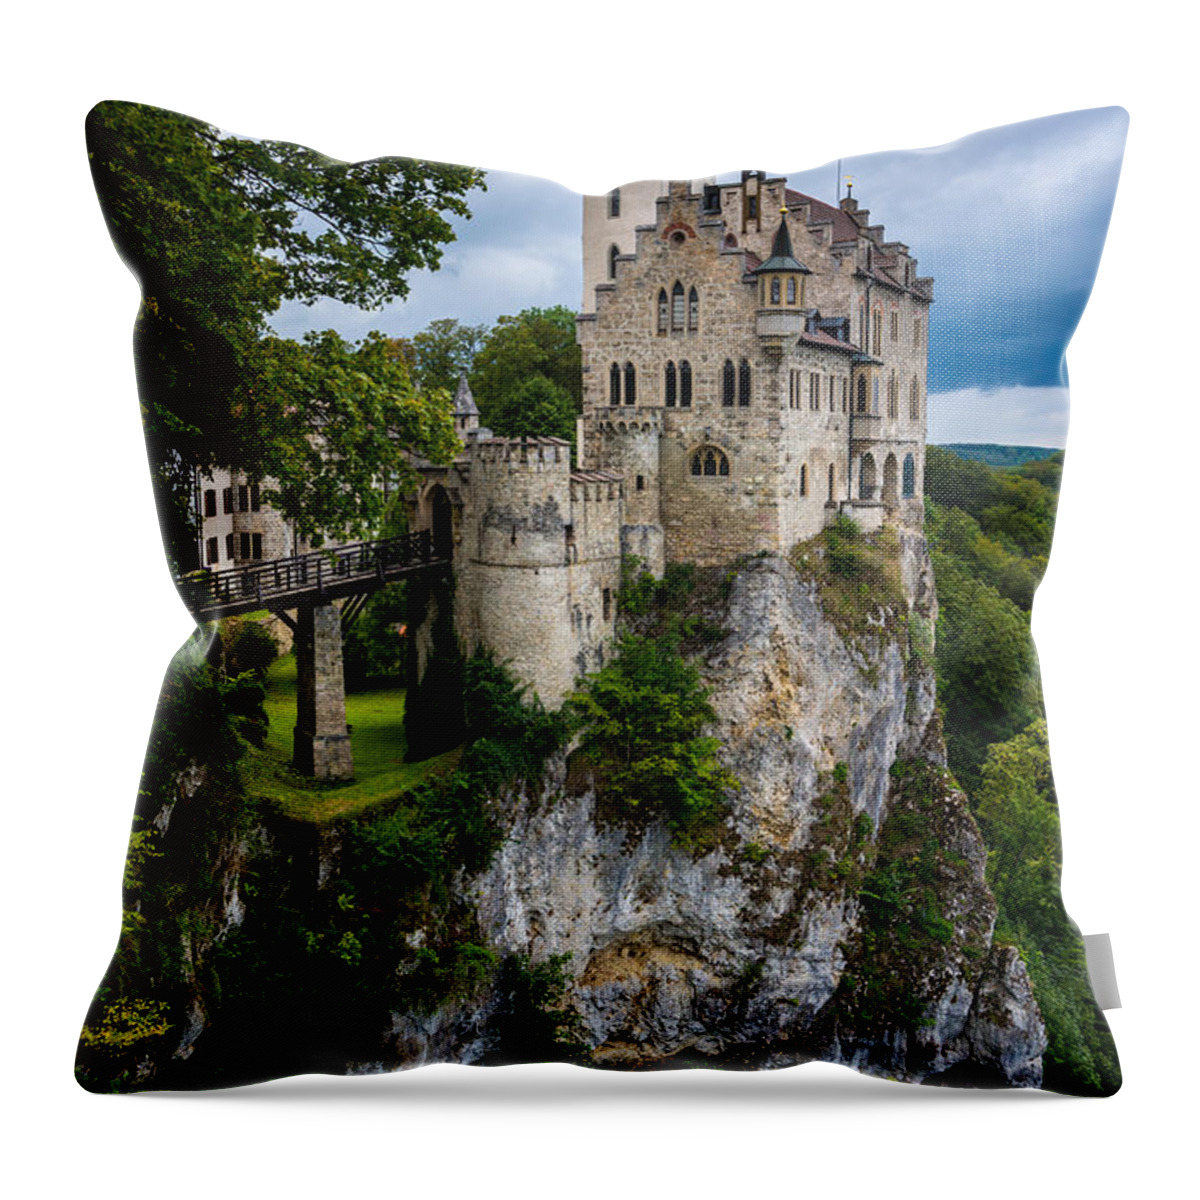 Lichtenstein Castle Throw Pillow featuring the photograph Lichtenstein Castle - Baden-Wurttemberg - Germany by Gary Whitton